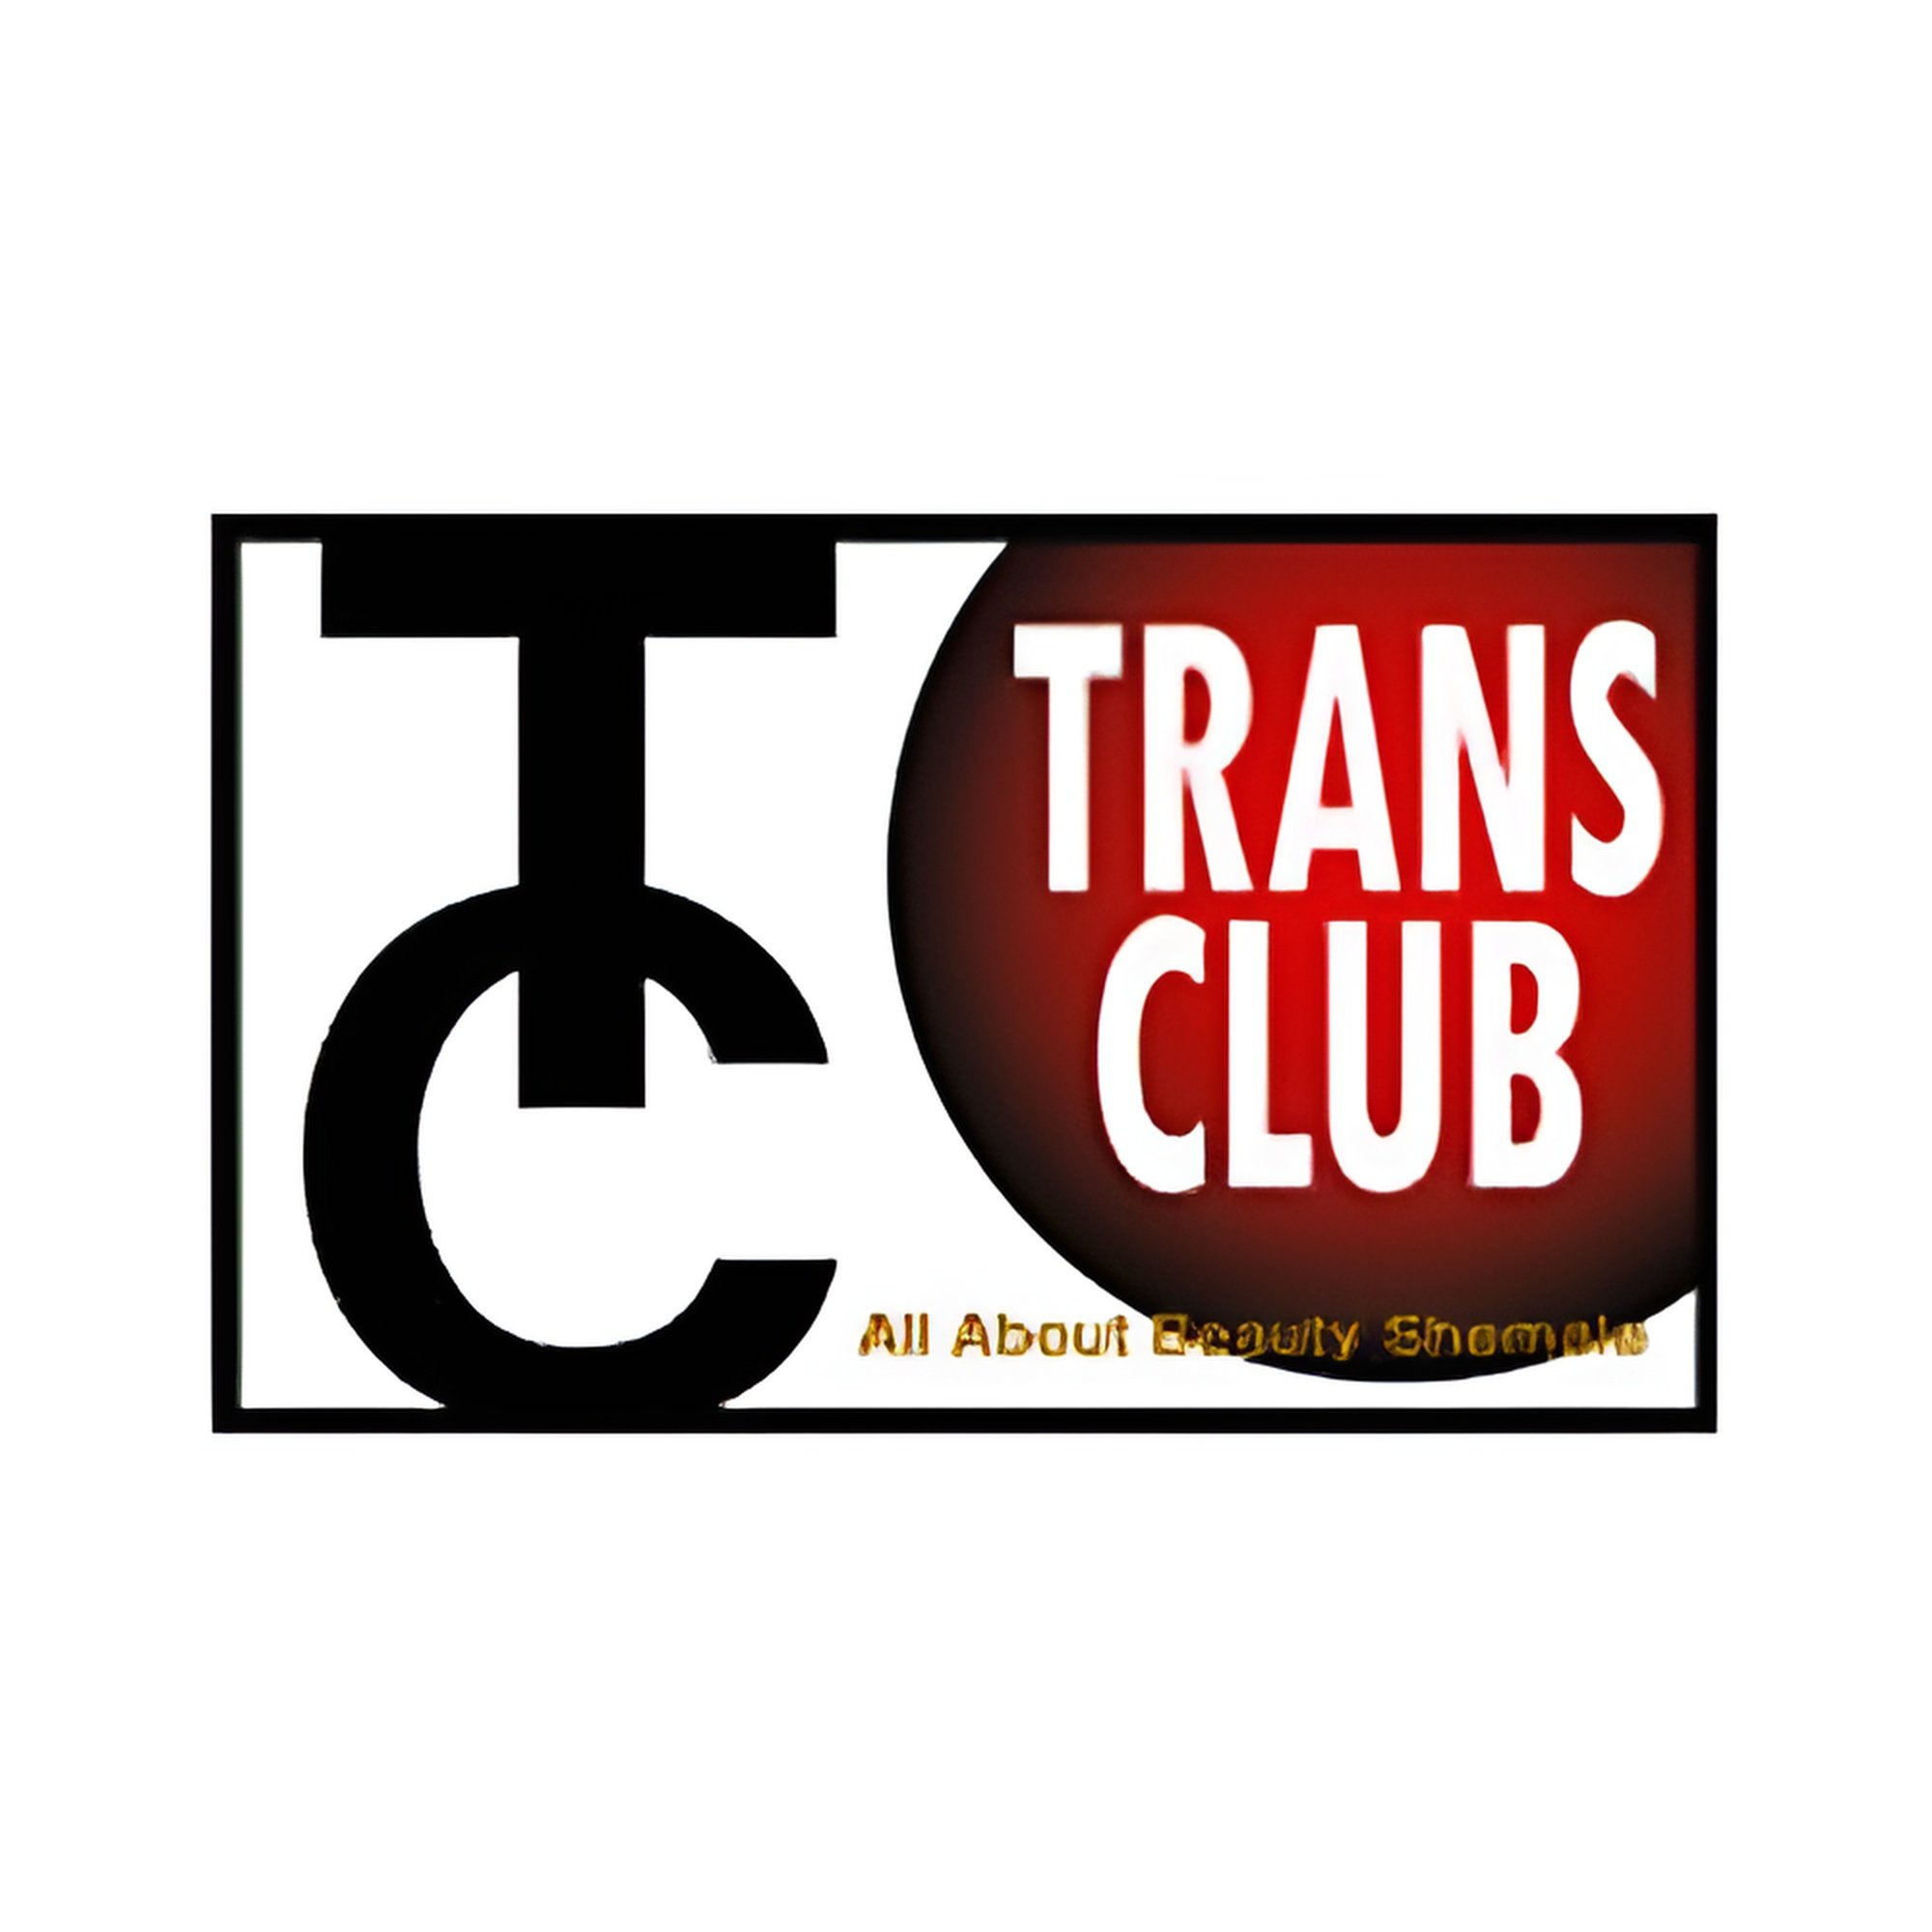 TRANS CLUB